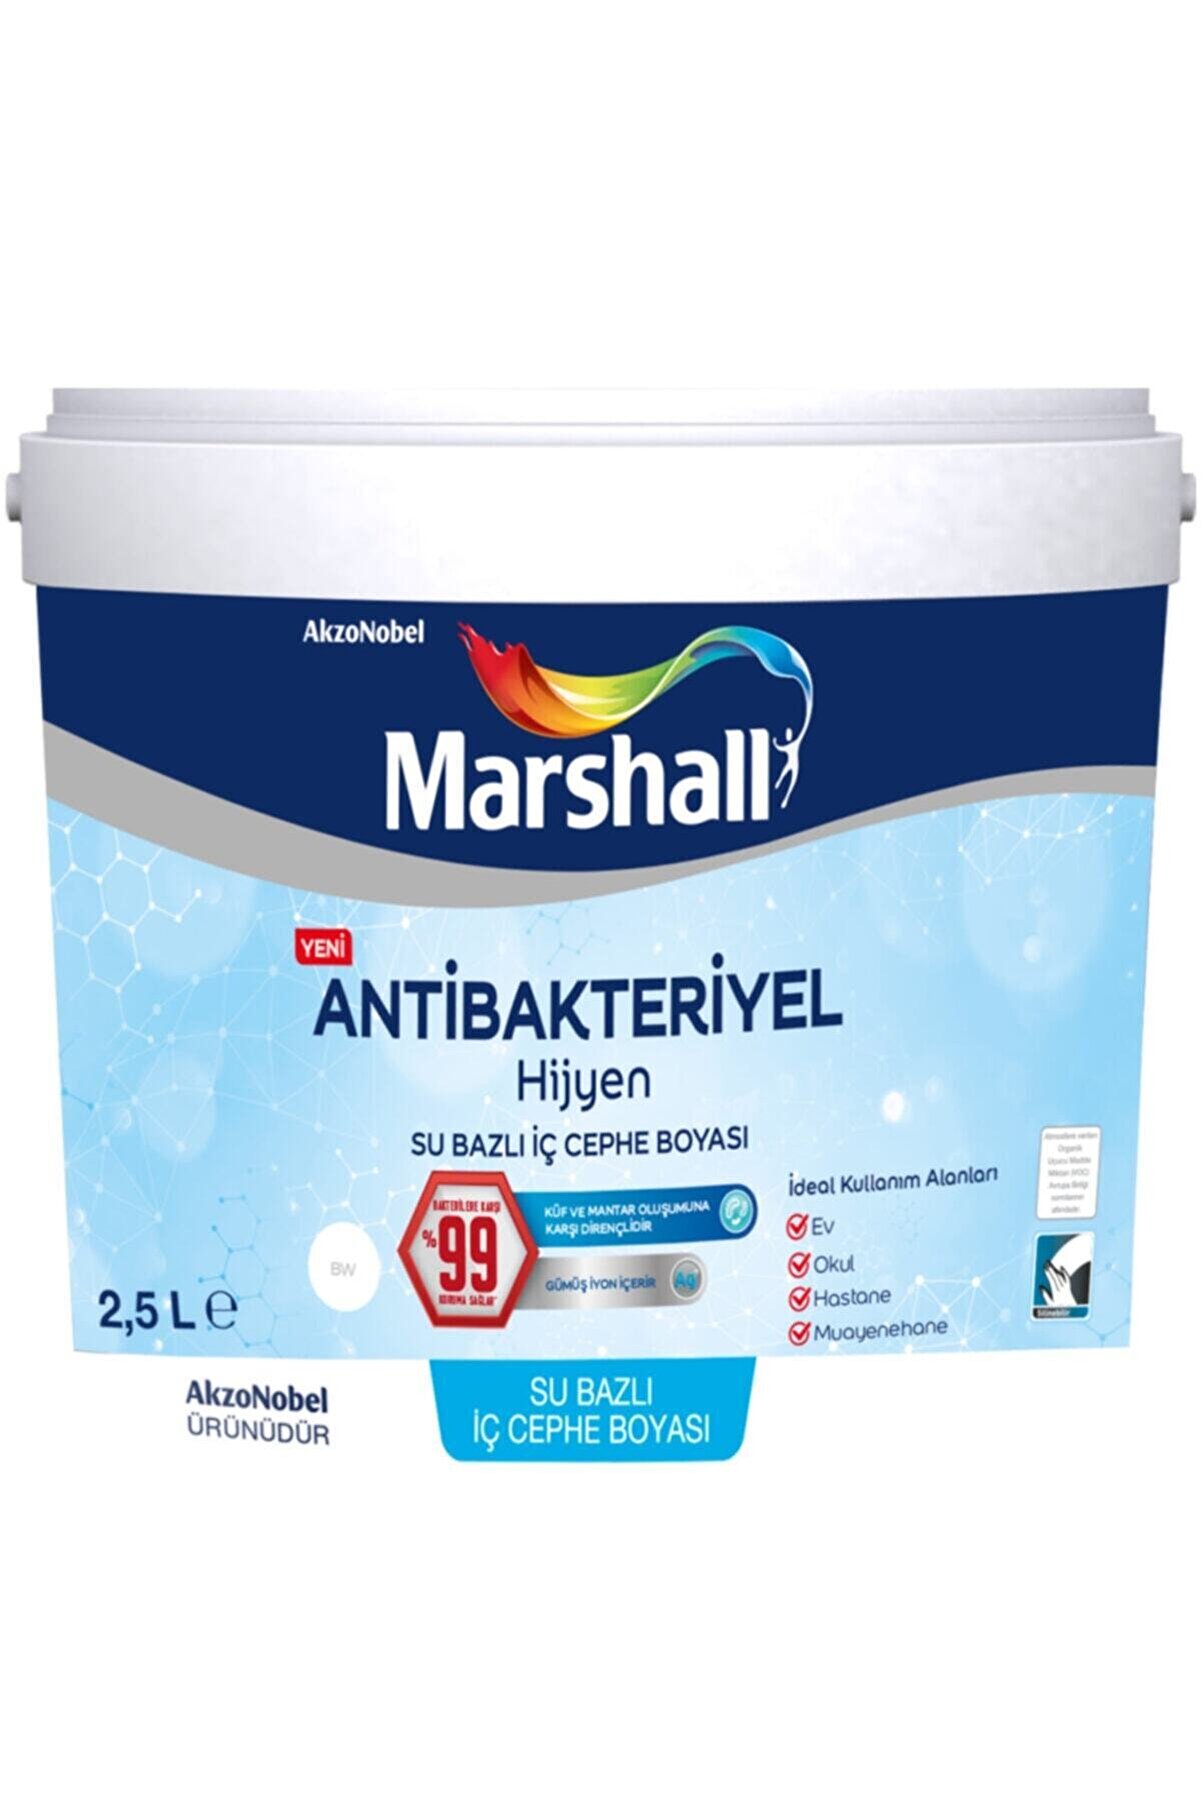 Marshall Antibakteriyel Hijyen Iç Cephe Duvar Boyası 2,5 Lt Vanilya Çiçeği